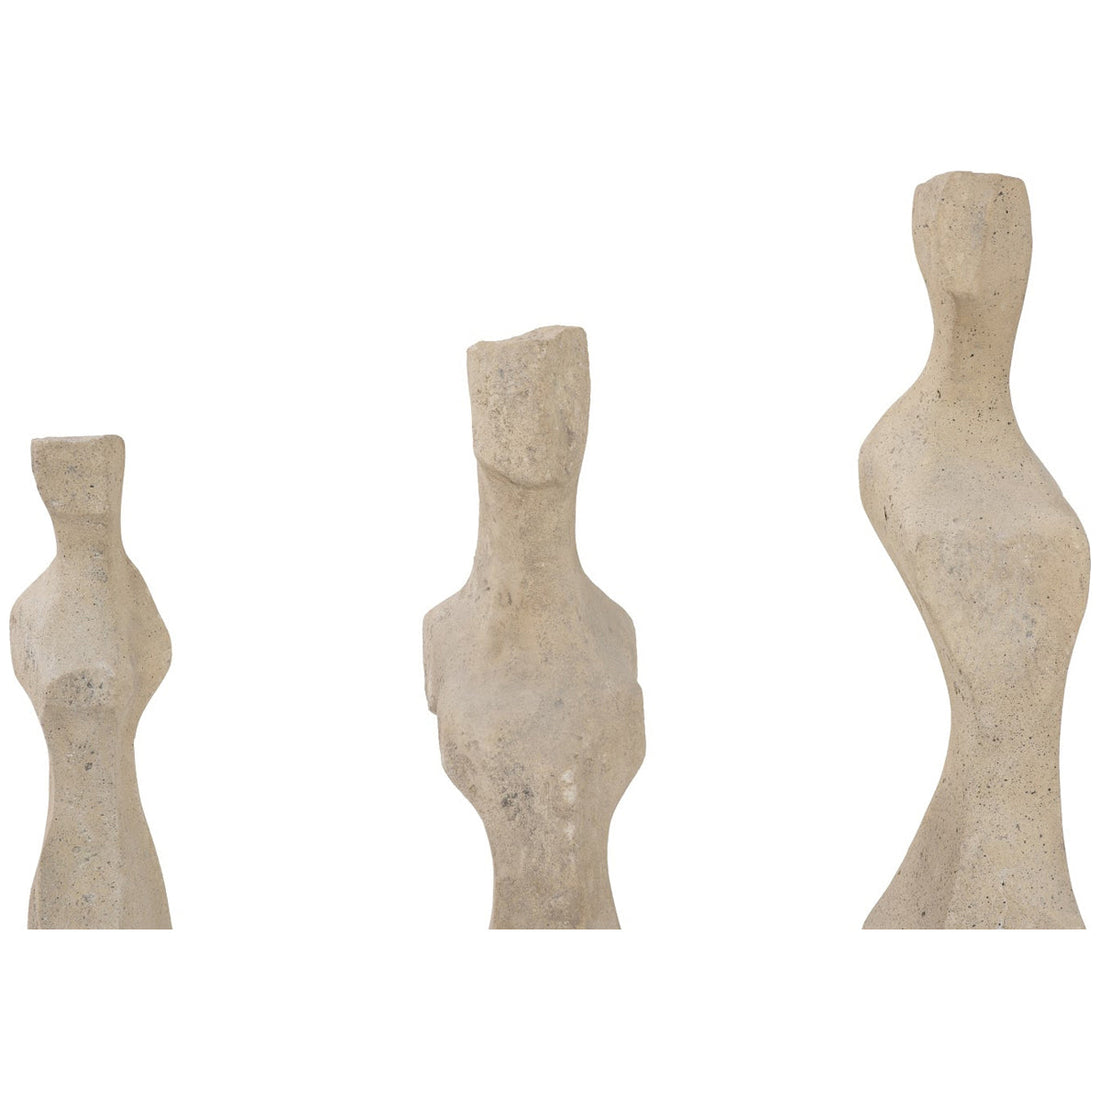 Phillips Collection Cast Woman Sculpture, 3-Piece Set